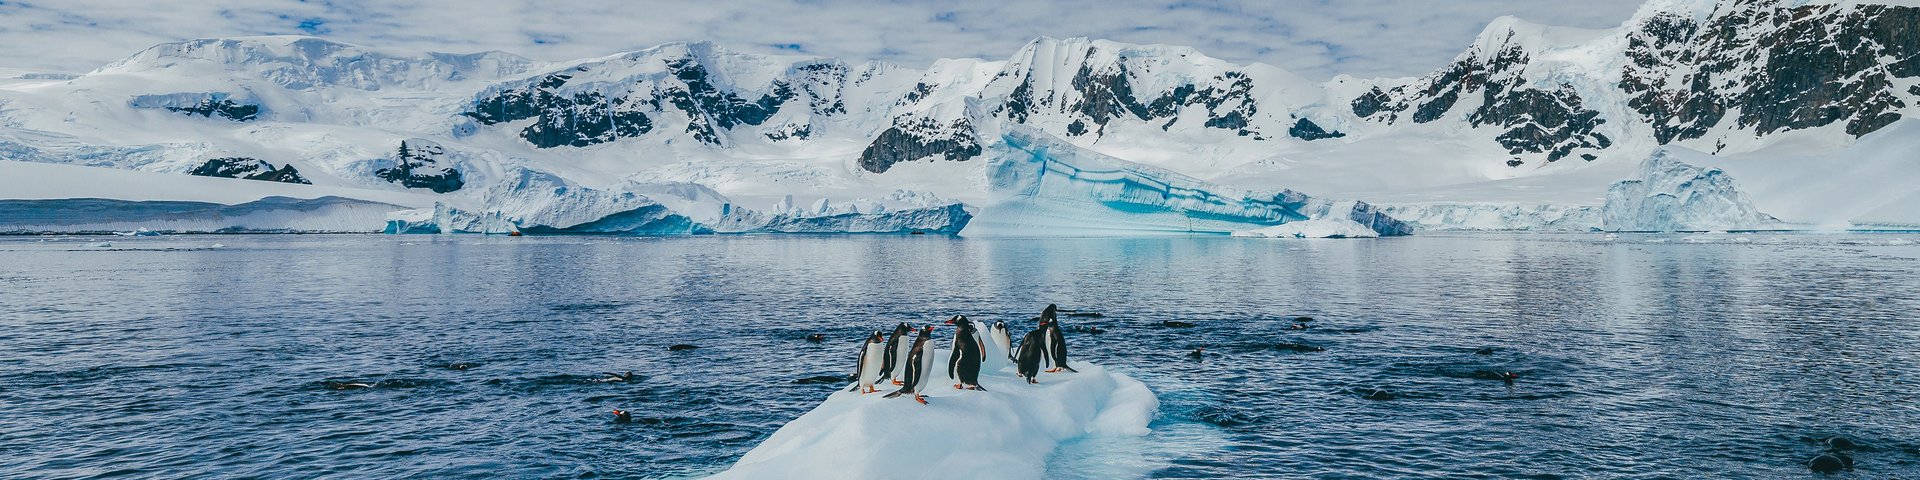 Pinguine auf einer Eisscholle